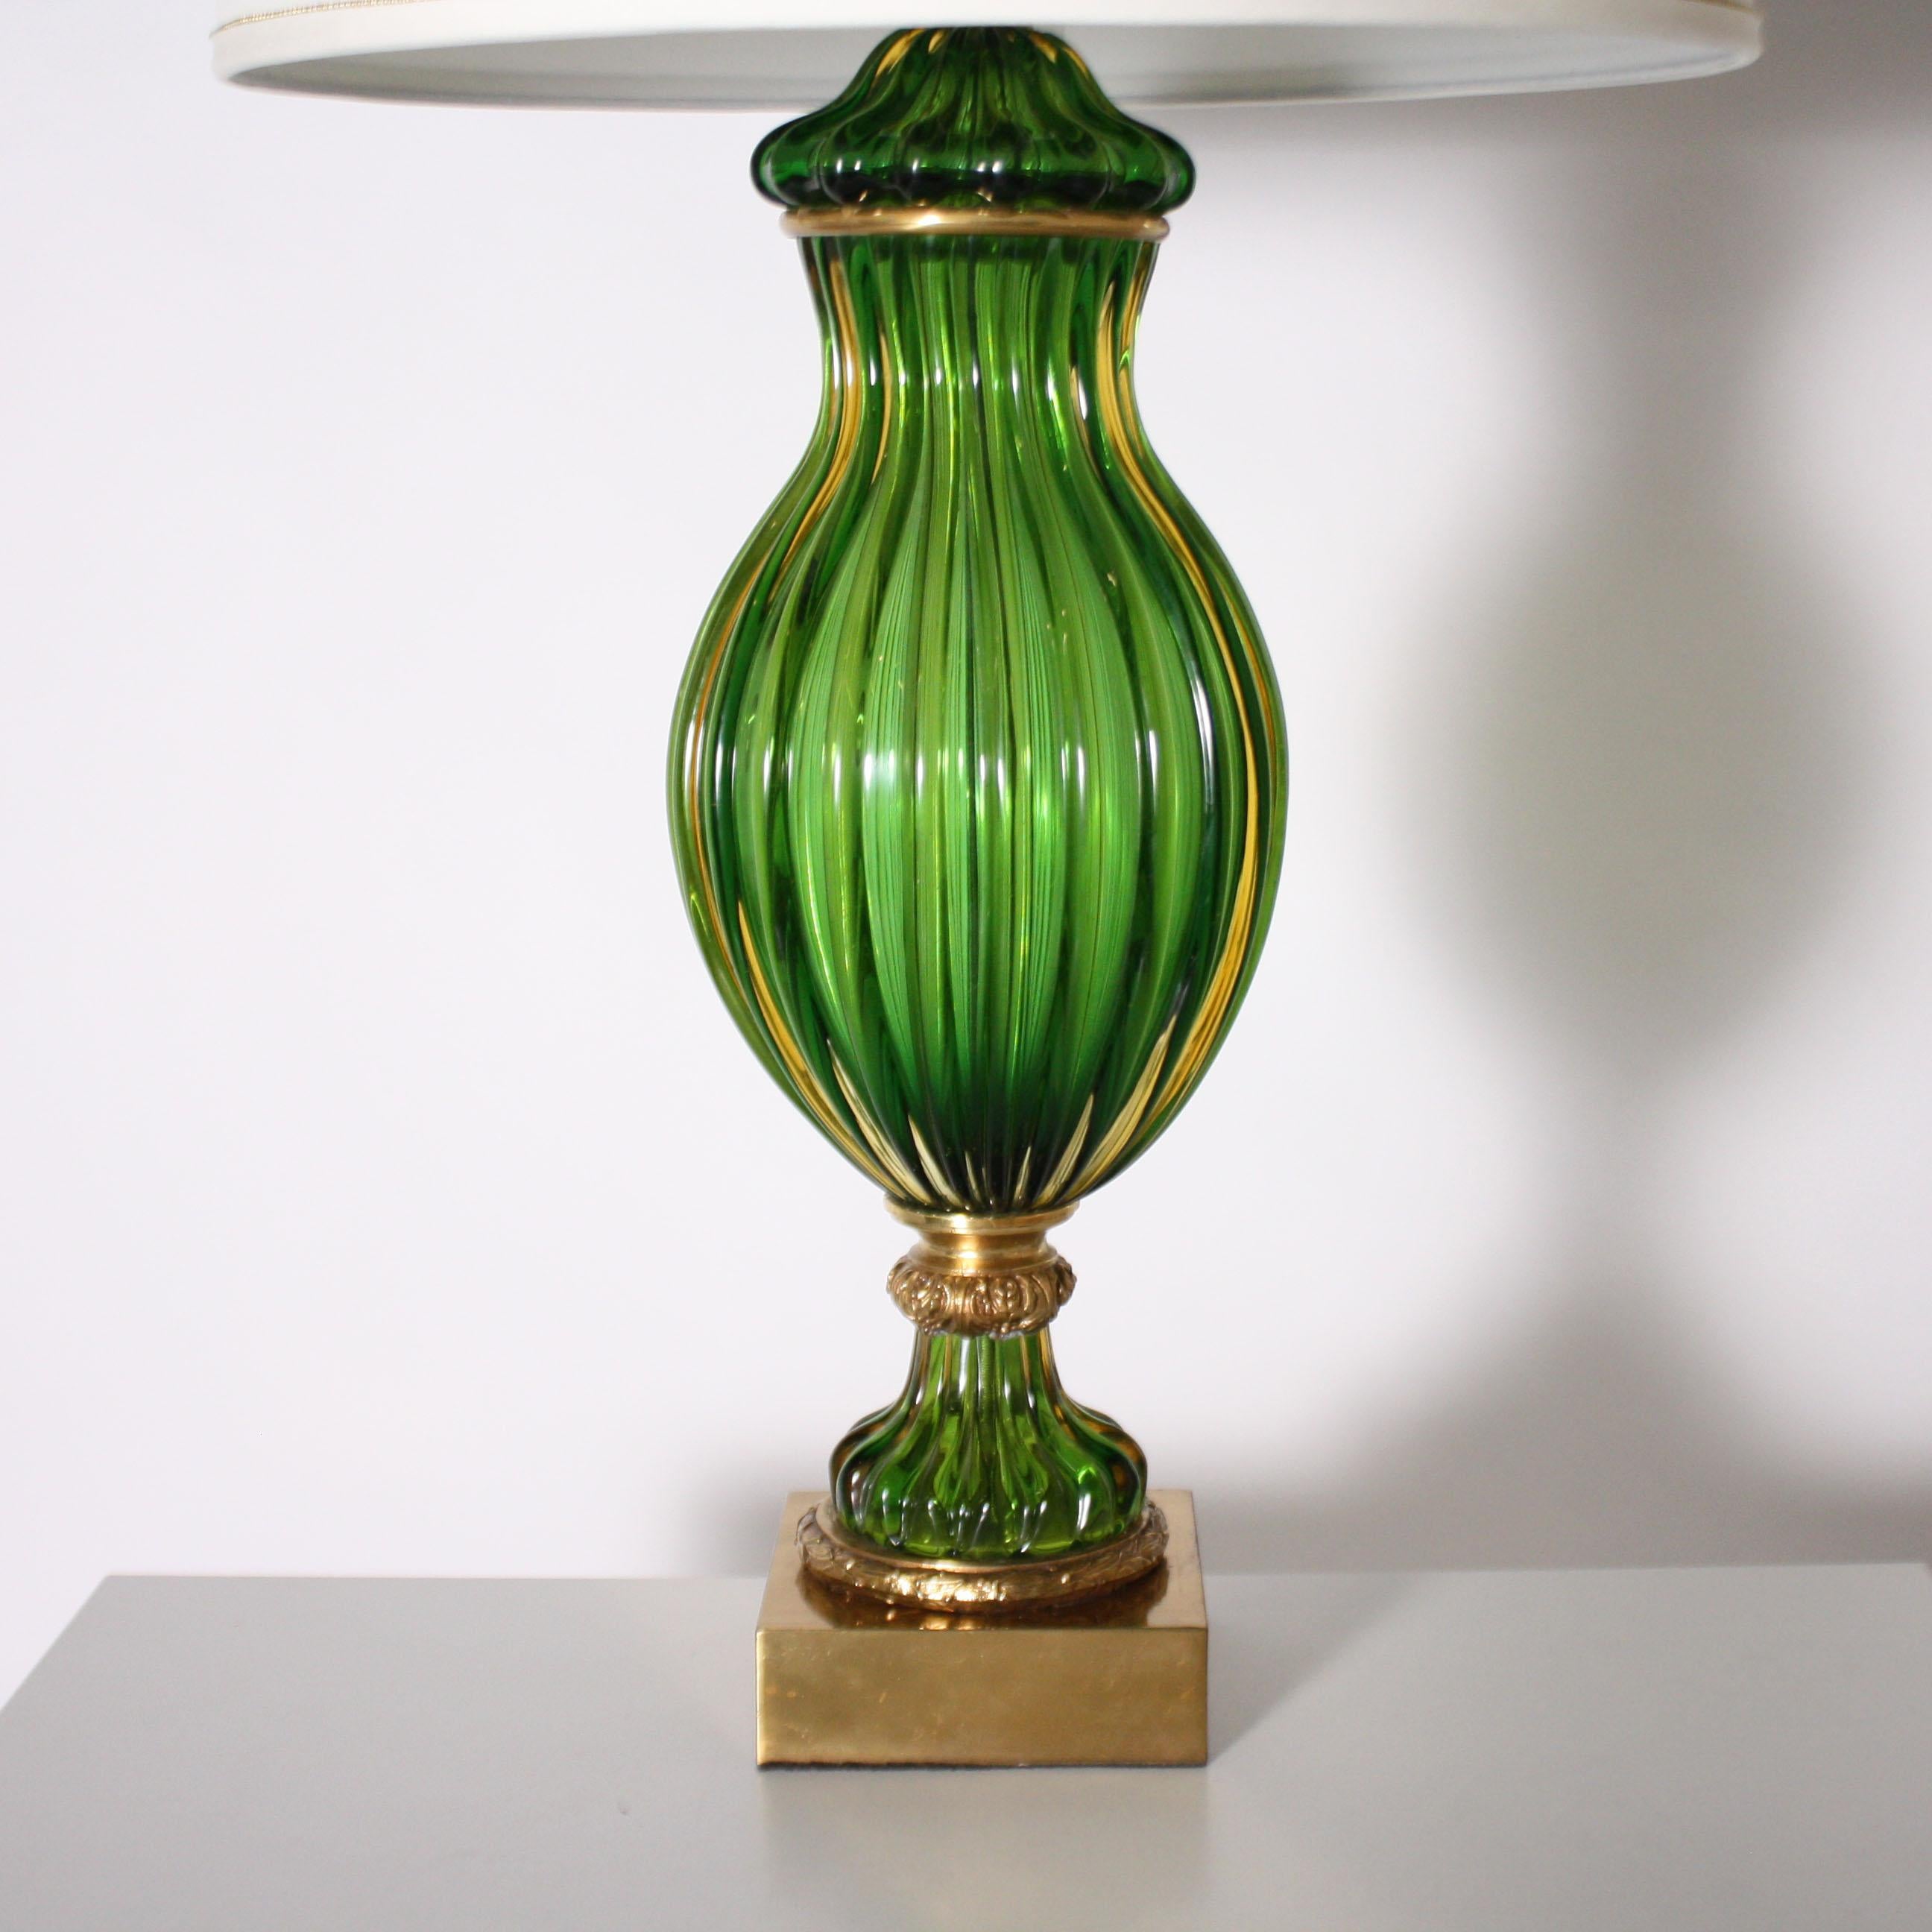 Pair of Marbro for Seguso Murano green lamps, circa 1950.